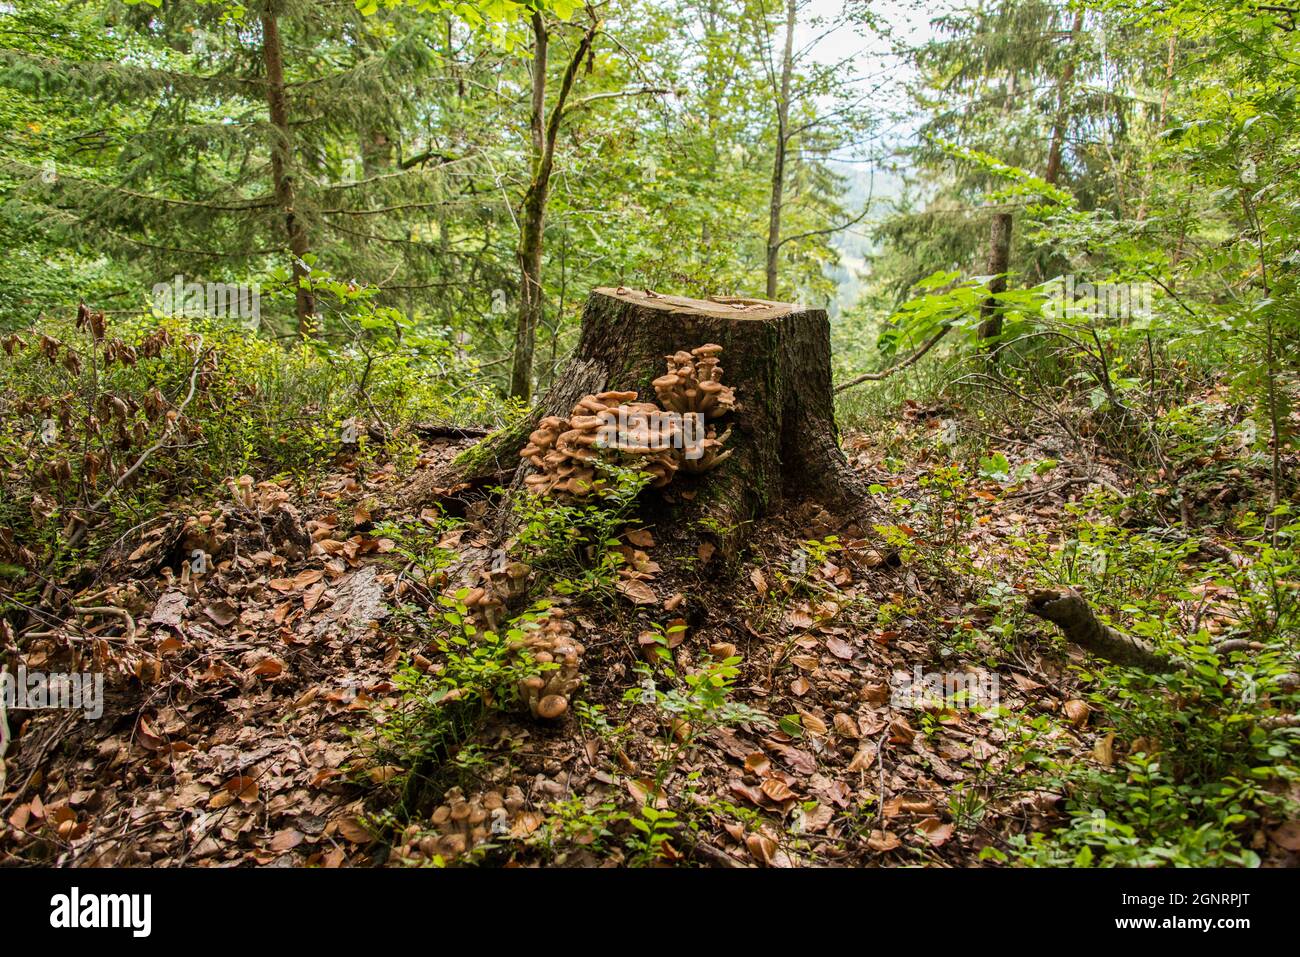 Mit Pilzen bewachsener Baumstumpf in einem bayerischen Wald - stump overgrown with mushrooms in a Bavarian forest Stock Photo